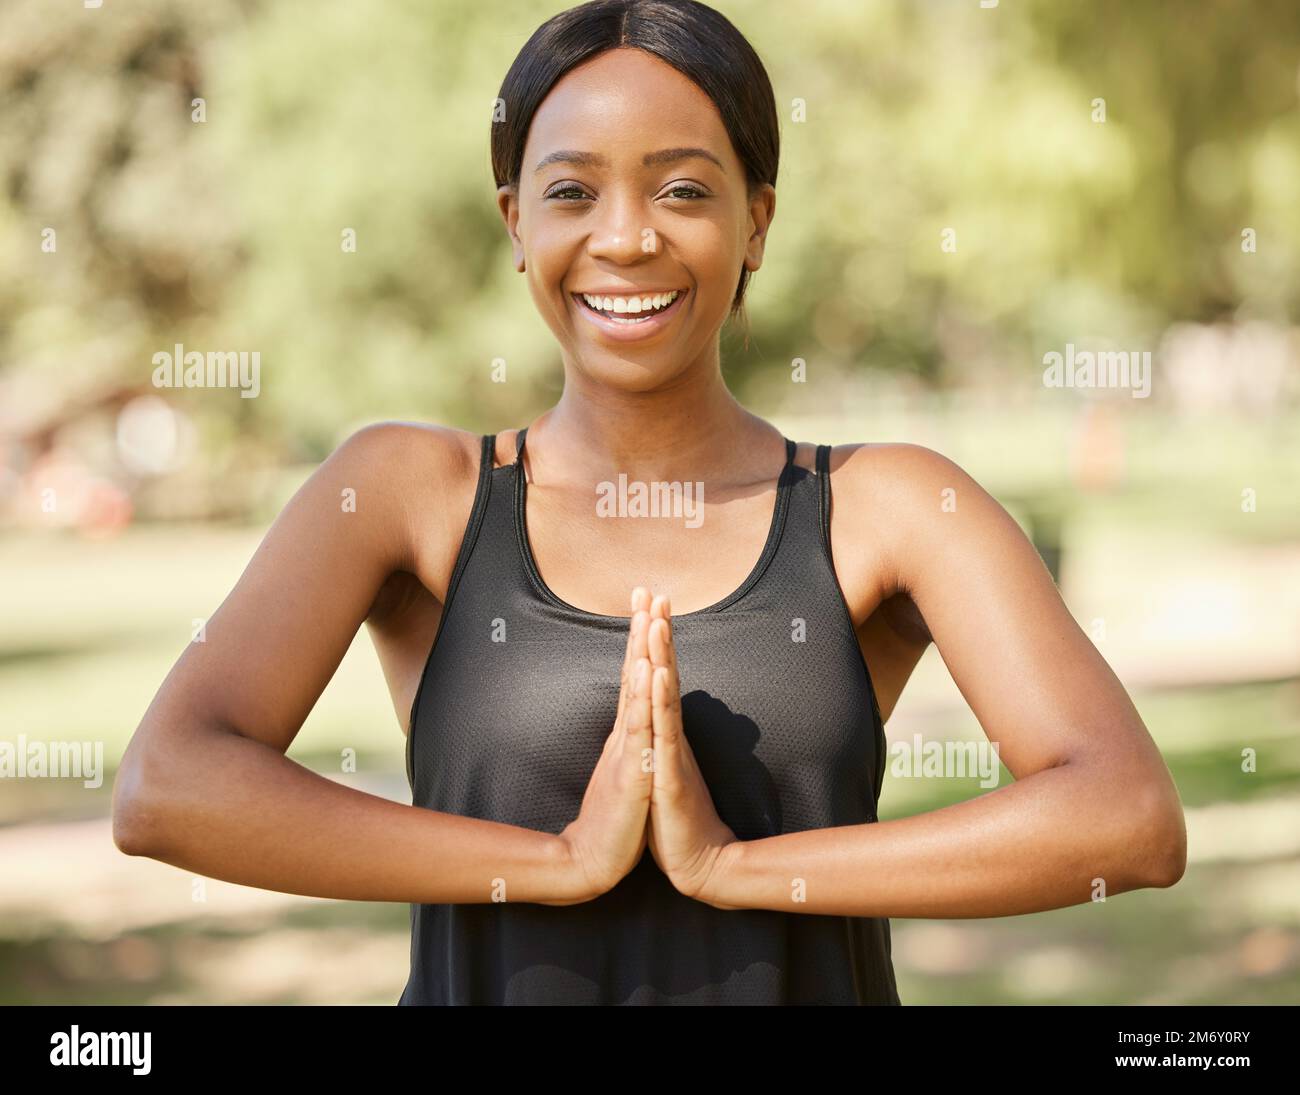 Portrait, yoga et méditation avec une femme noire dans la nature pour la santé mentale, le bien-être ou la forme physique zen. Parc, exercice et pleine d'esprit avec une femme Banque D'Images